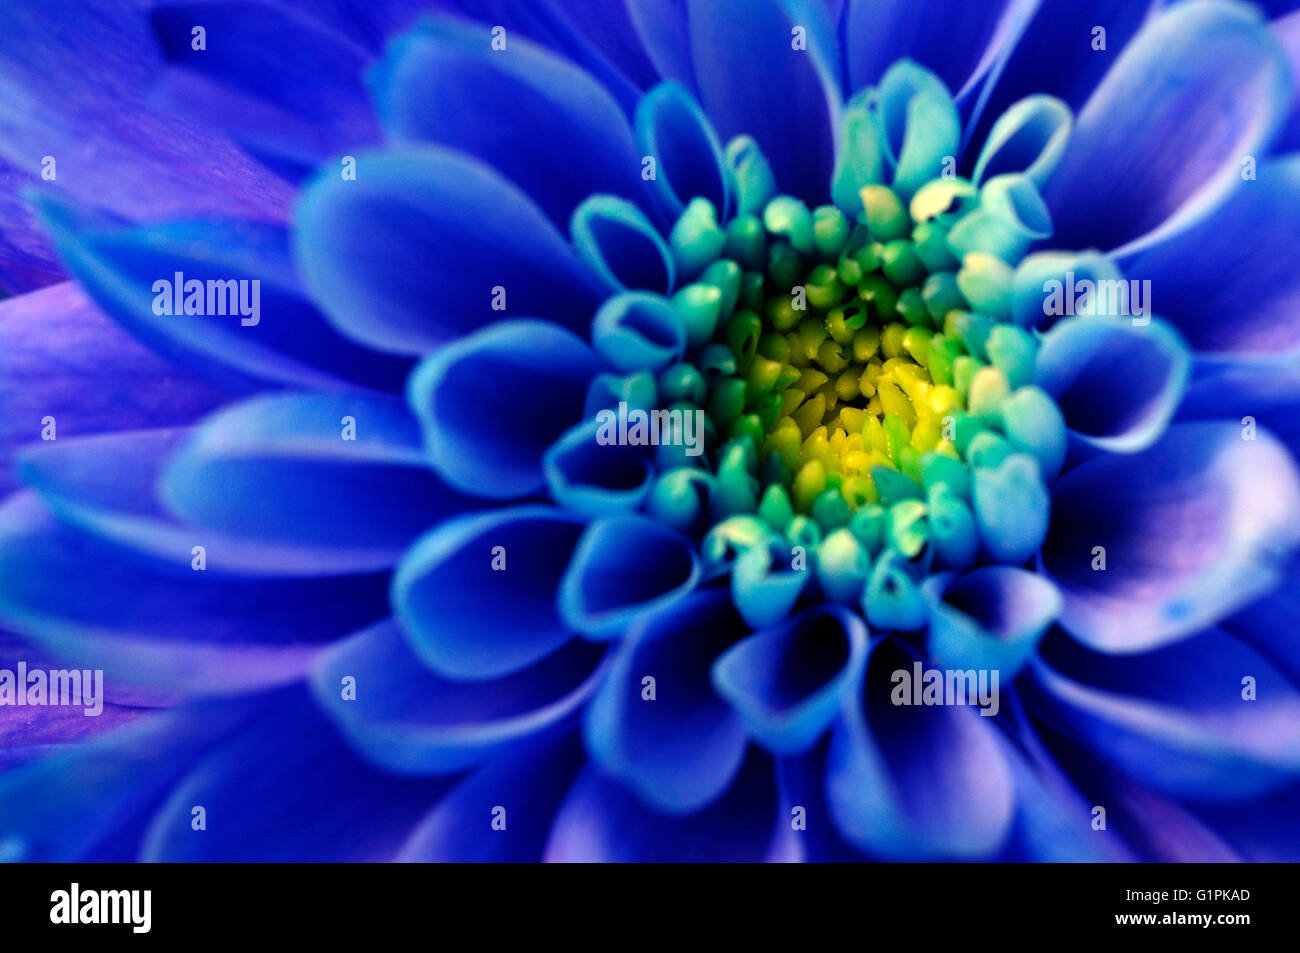 Close up of blue aster fleur pour background Banque D'Images